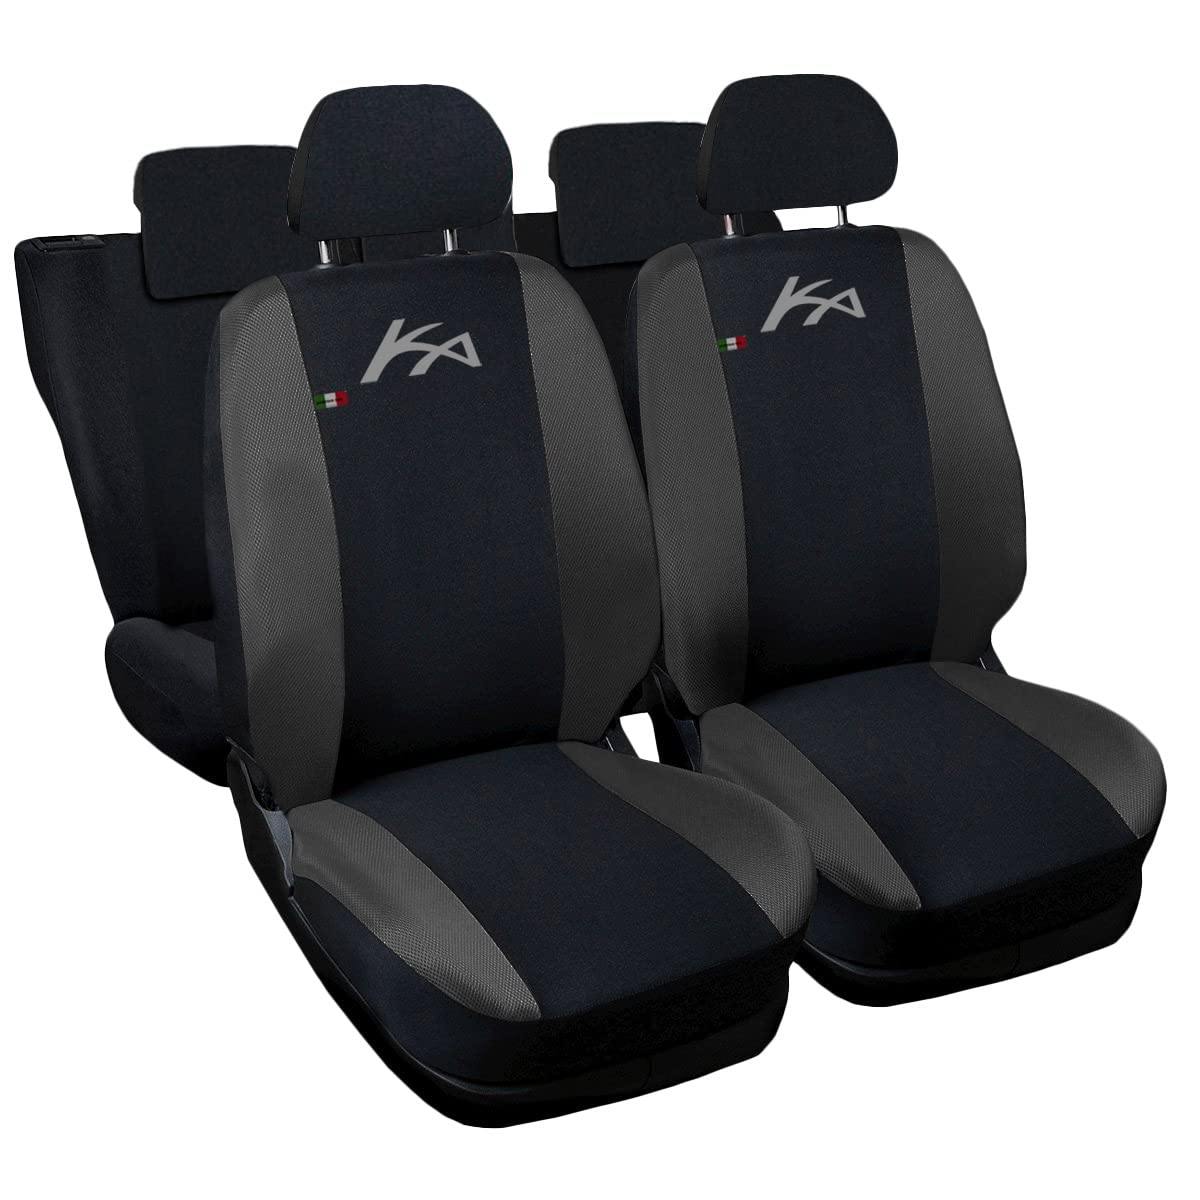 Lupex Shop Autositzbezüge kompatibel mit KA, Made in Italy, Polyestergewebe, kompletter Satz Vorder- und Rücksitze (Schwarz - Dunkelgrau) von Lupex Shop